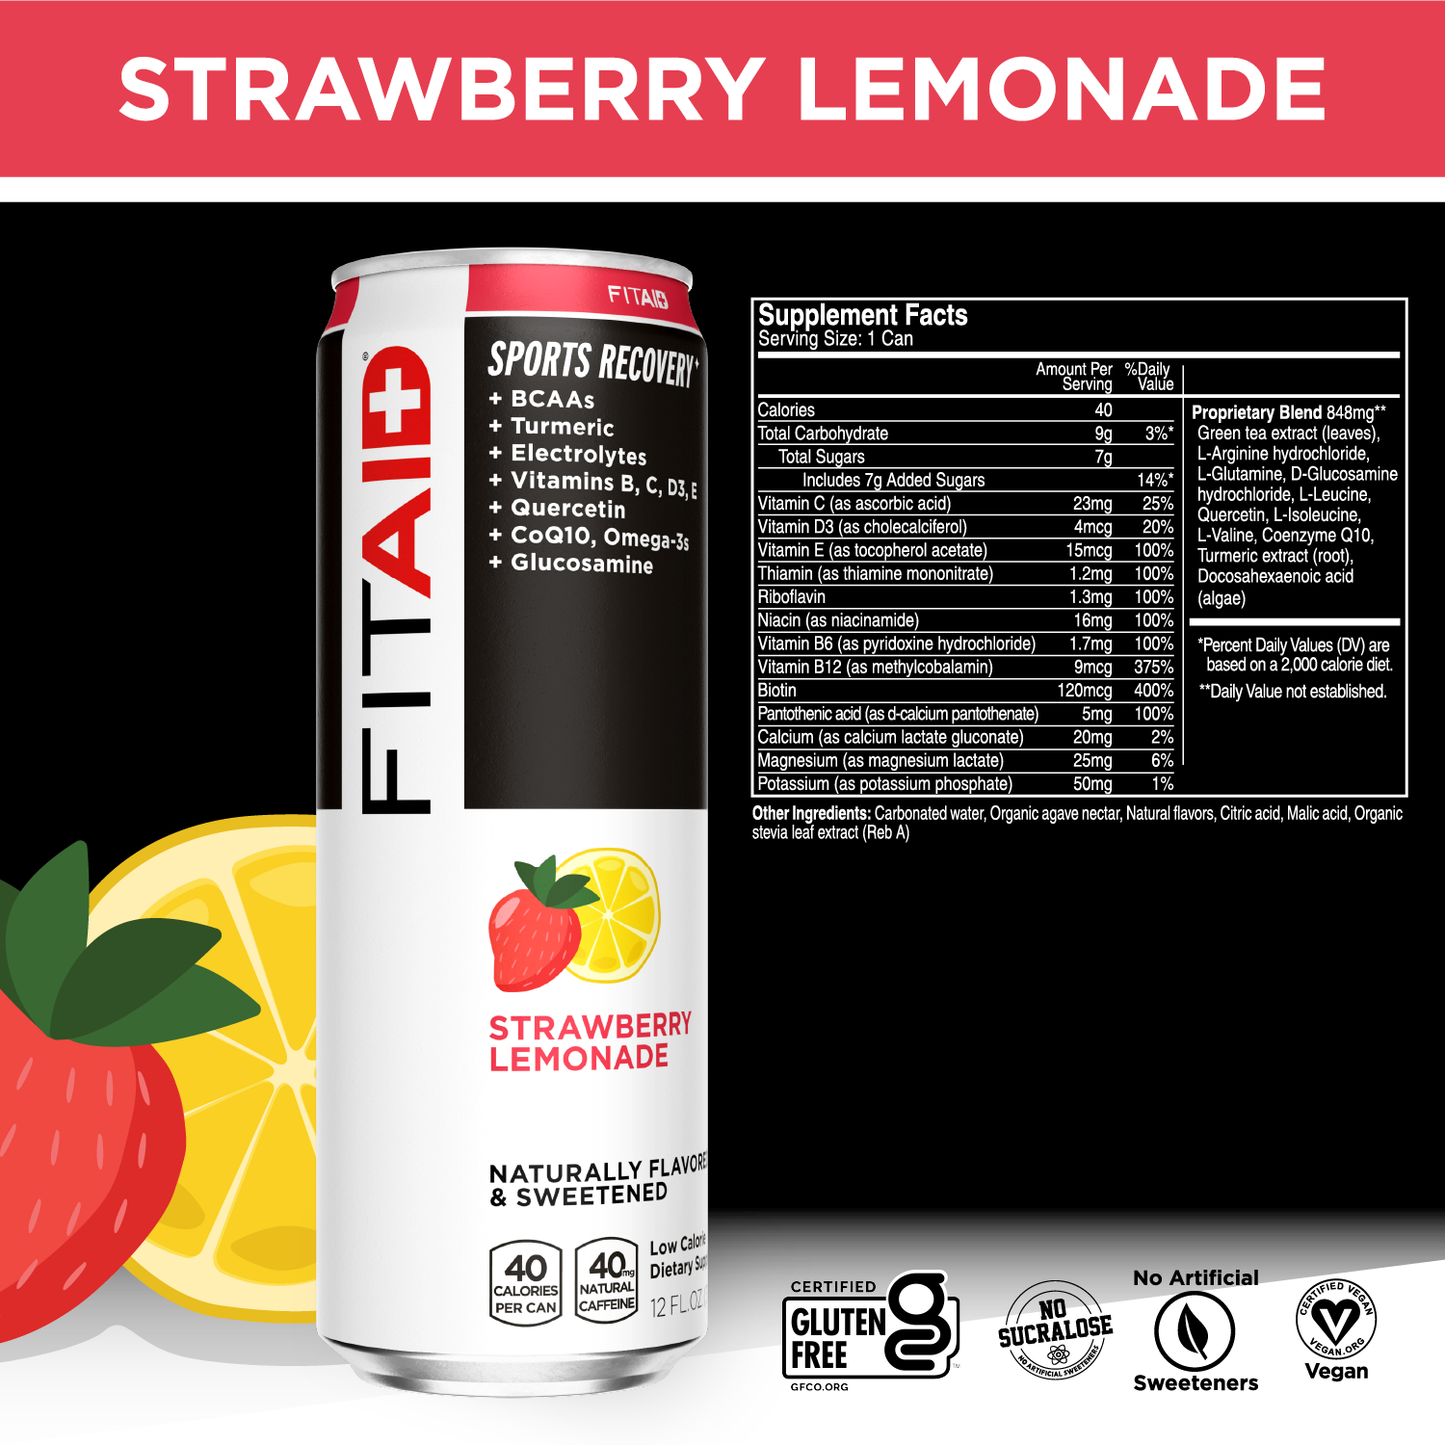 FITAID Strawberry Lemonade:  FASL-12P (00810047240778)